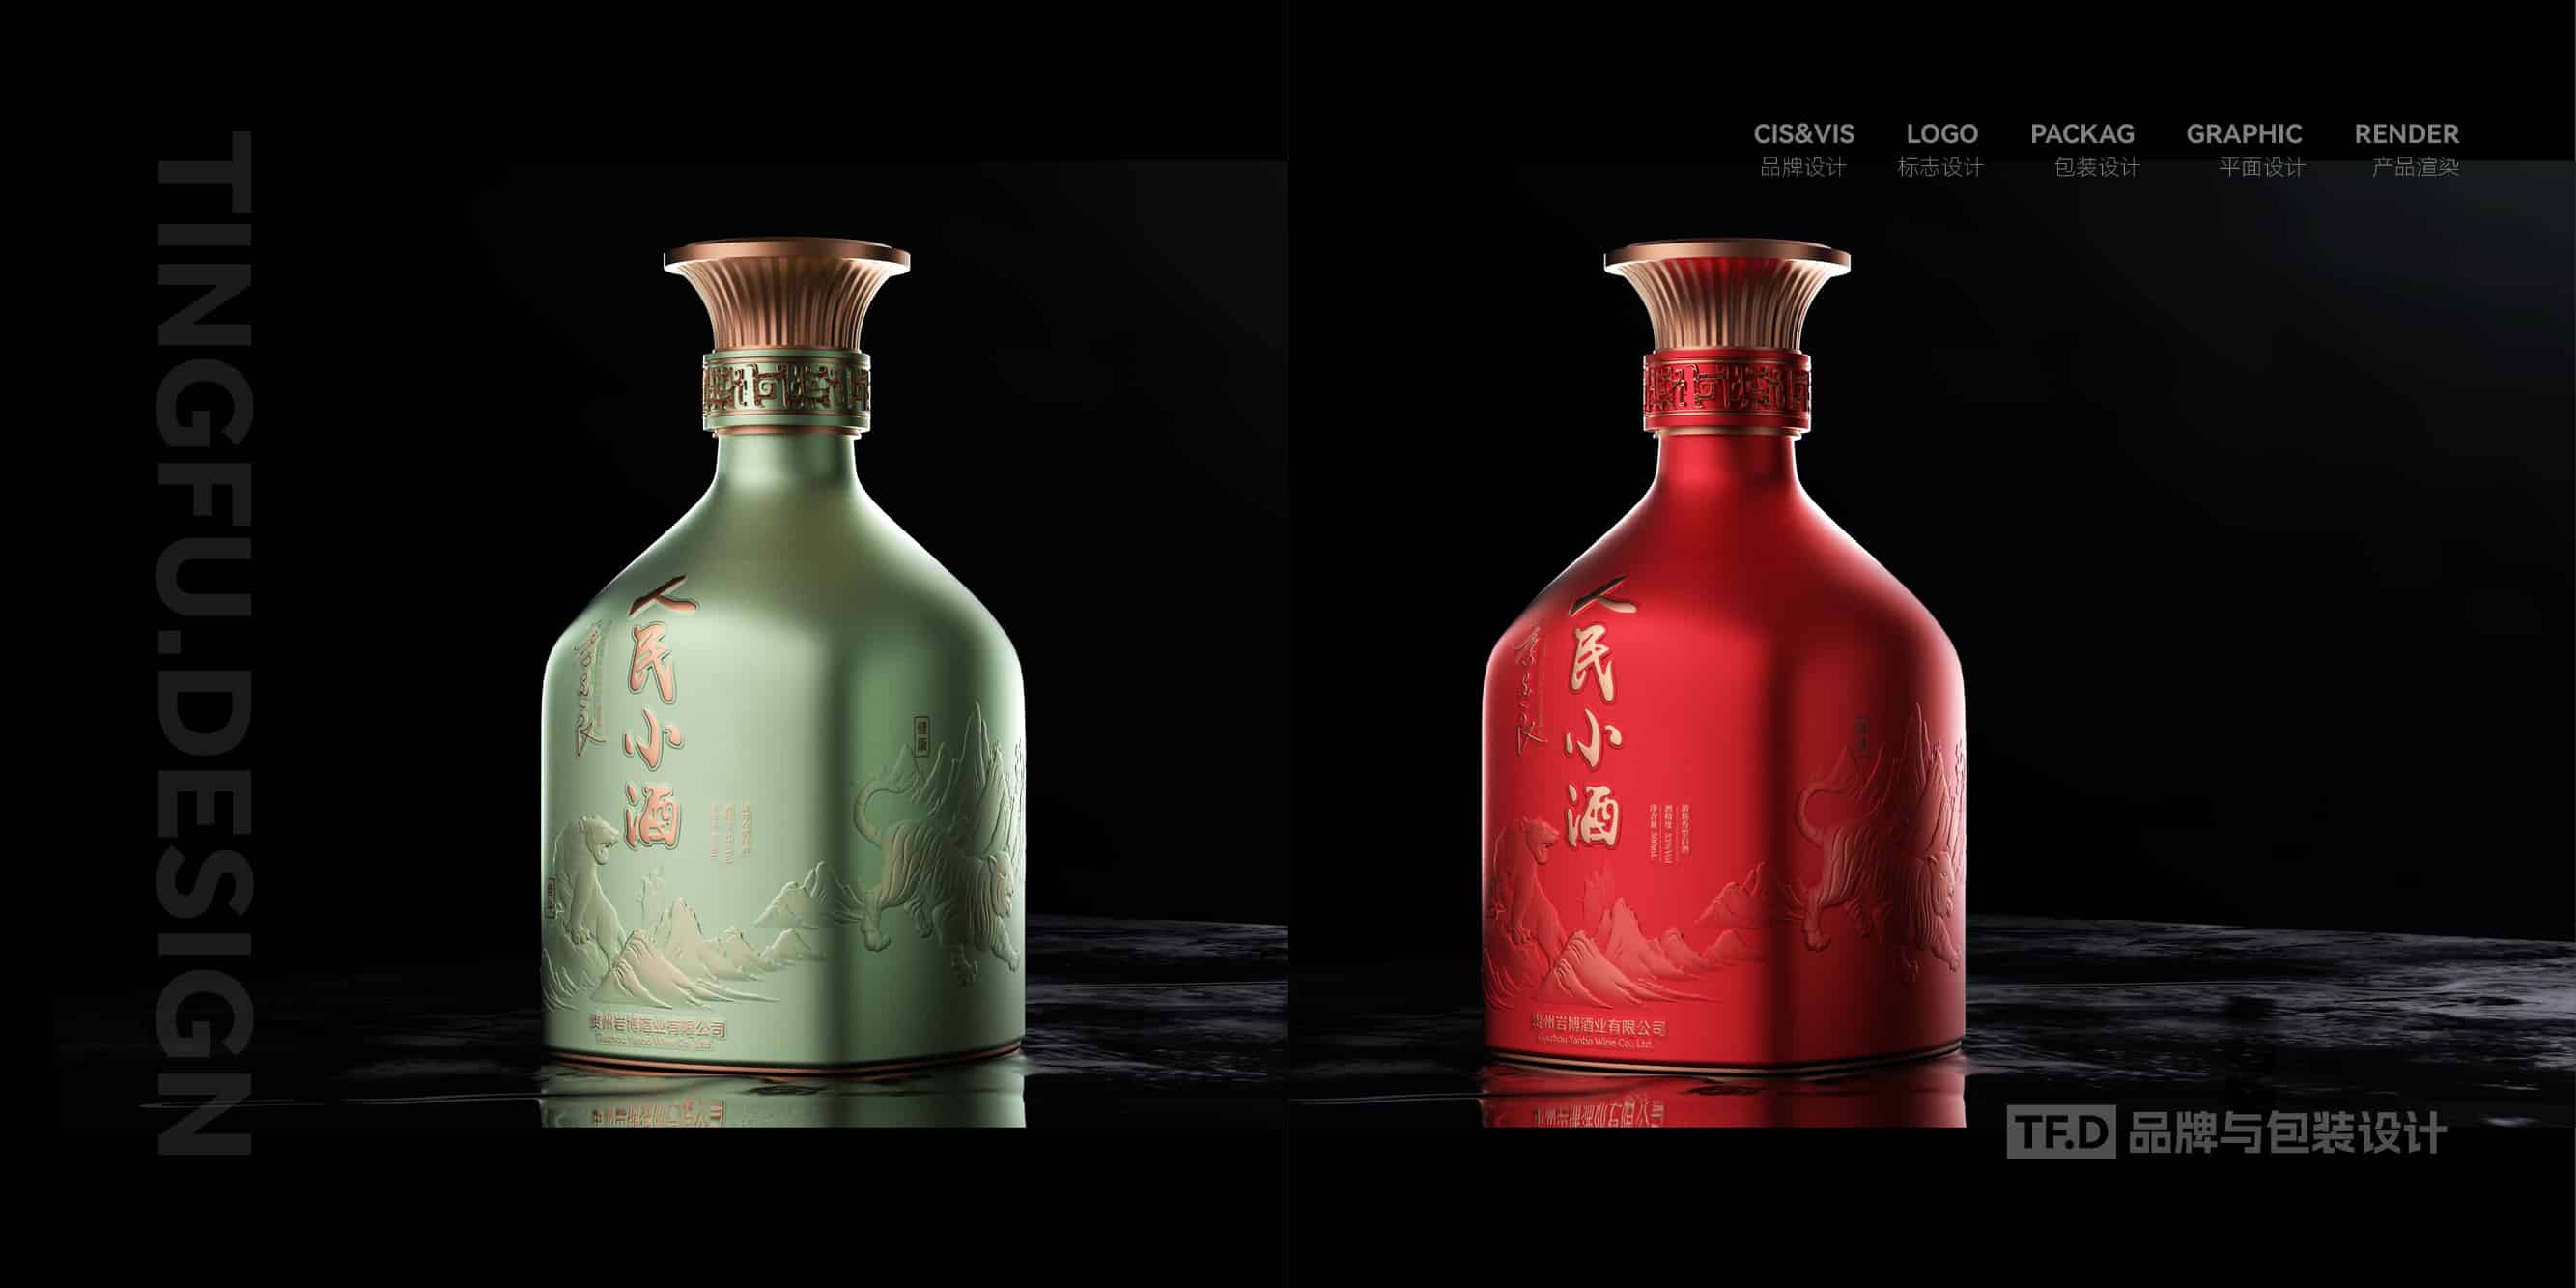 TFD品牌与包装设计-部分酒包装设计案例49-tuya.jpg